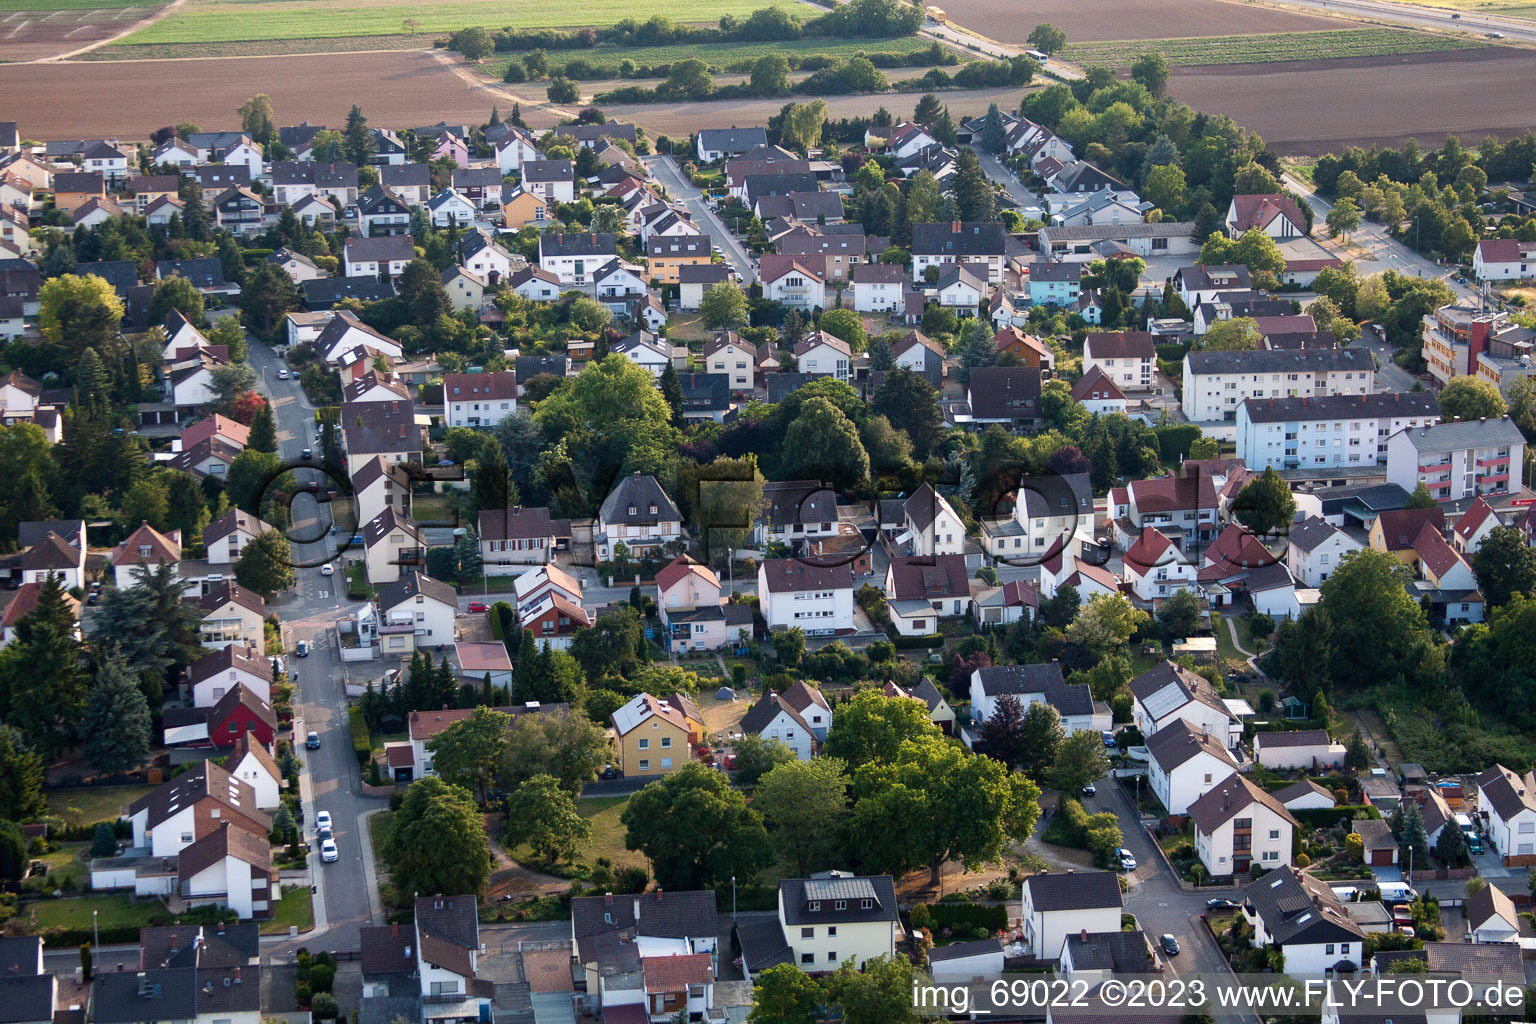 District Dannstadt in Dannstadt-Schauernheim in the state Rhineland-Palatinate, Germany from above